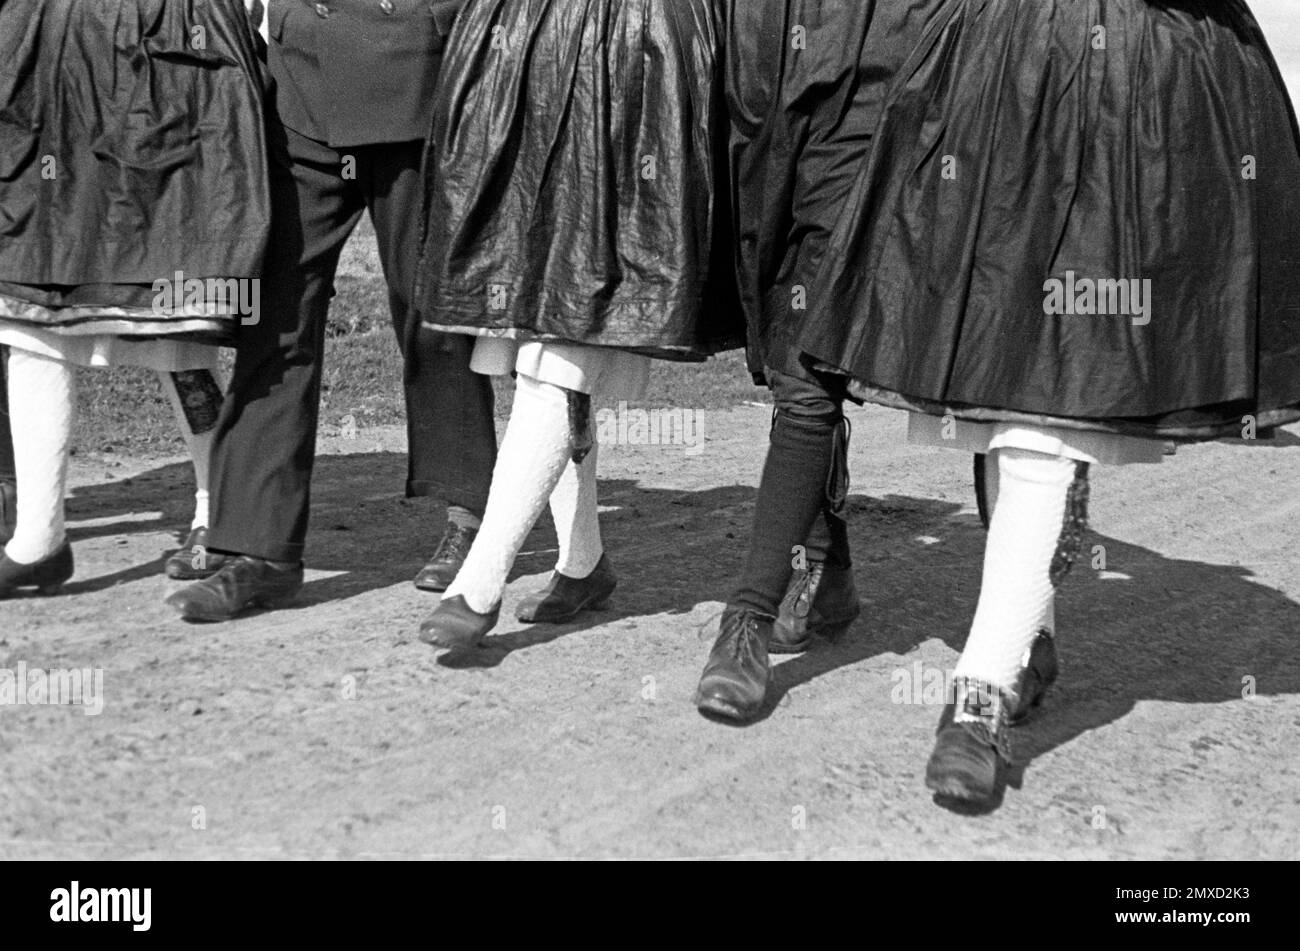 Junge Leute in Tracht laufen eine Landstraße im Schwalm-Eder-Kreis in Hessen entlang, 1938. Jeunes en costume traditionnel marchant le long d'une route de campagne dans la région de Schwalm-Eder à Hesse, 1938. Banque D'Images